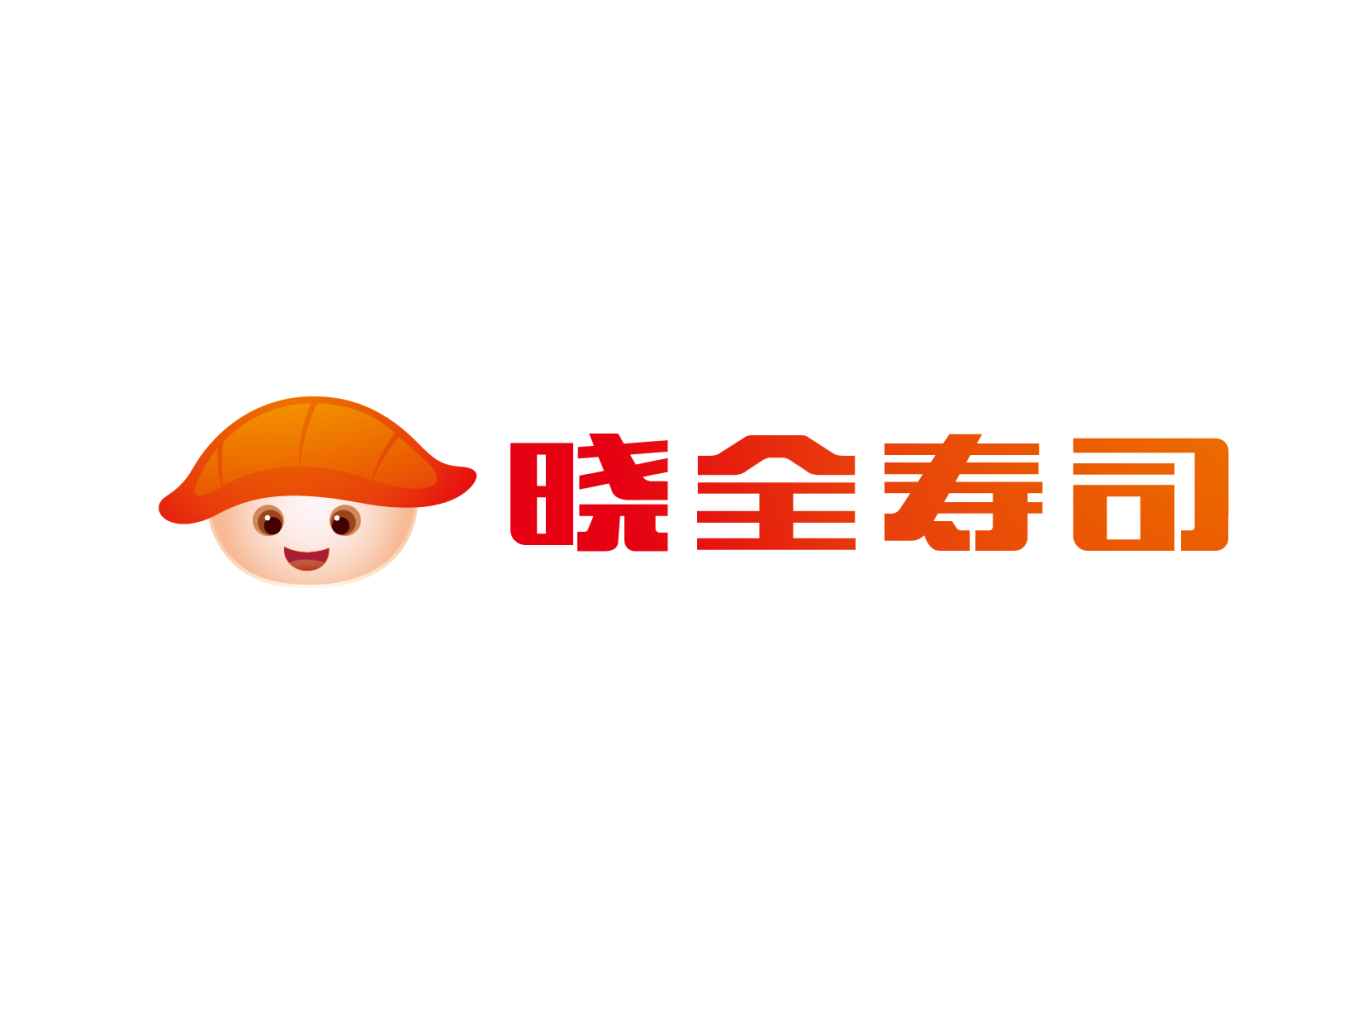 曉全壽司logo升級圖11